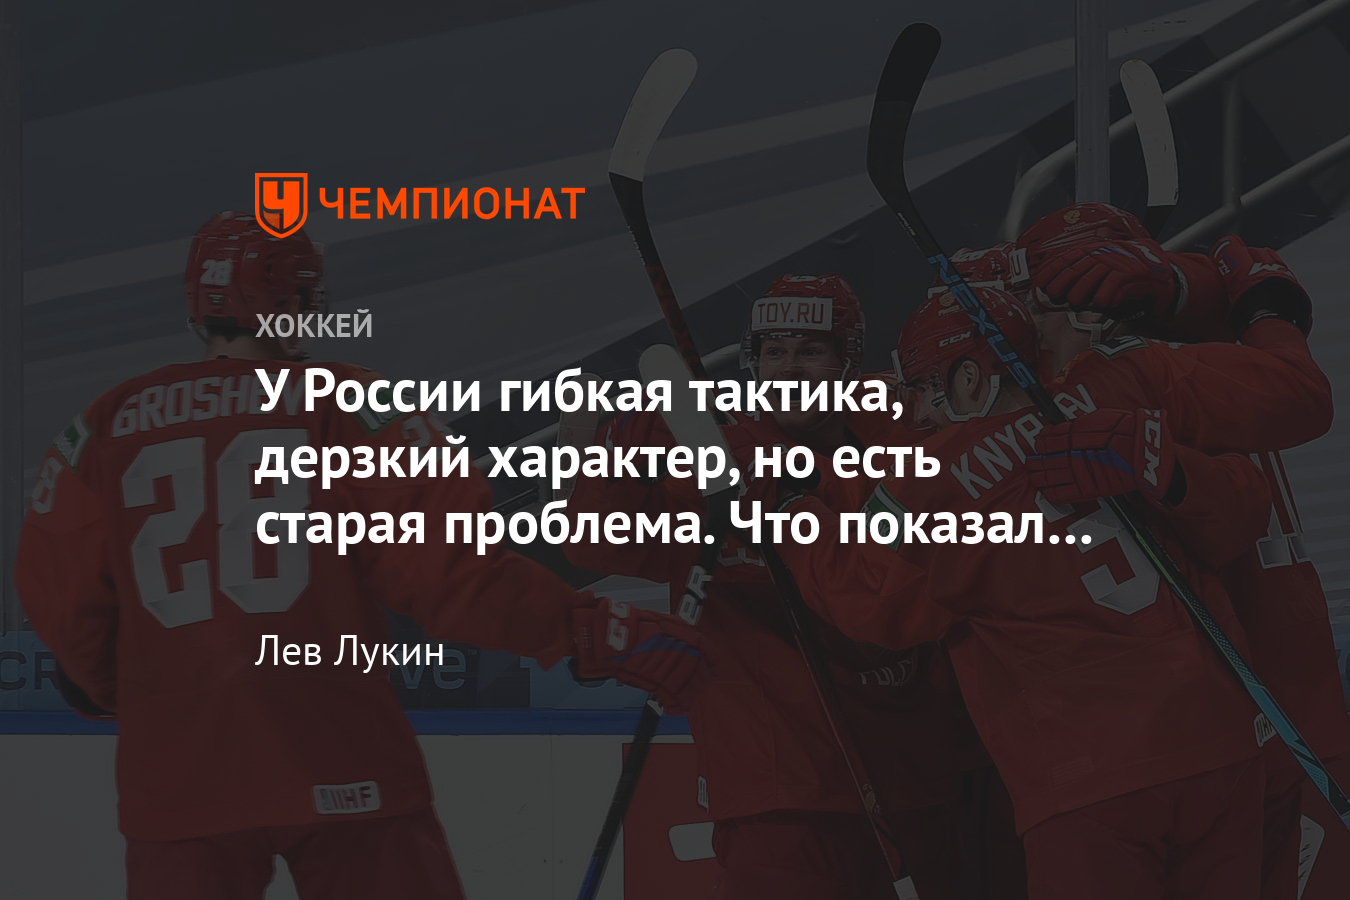 Сборная России обыграла сборную США в дебютном матче МЧМ-2021 по хоккею